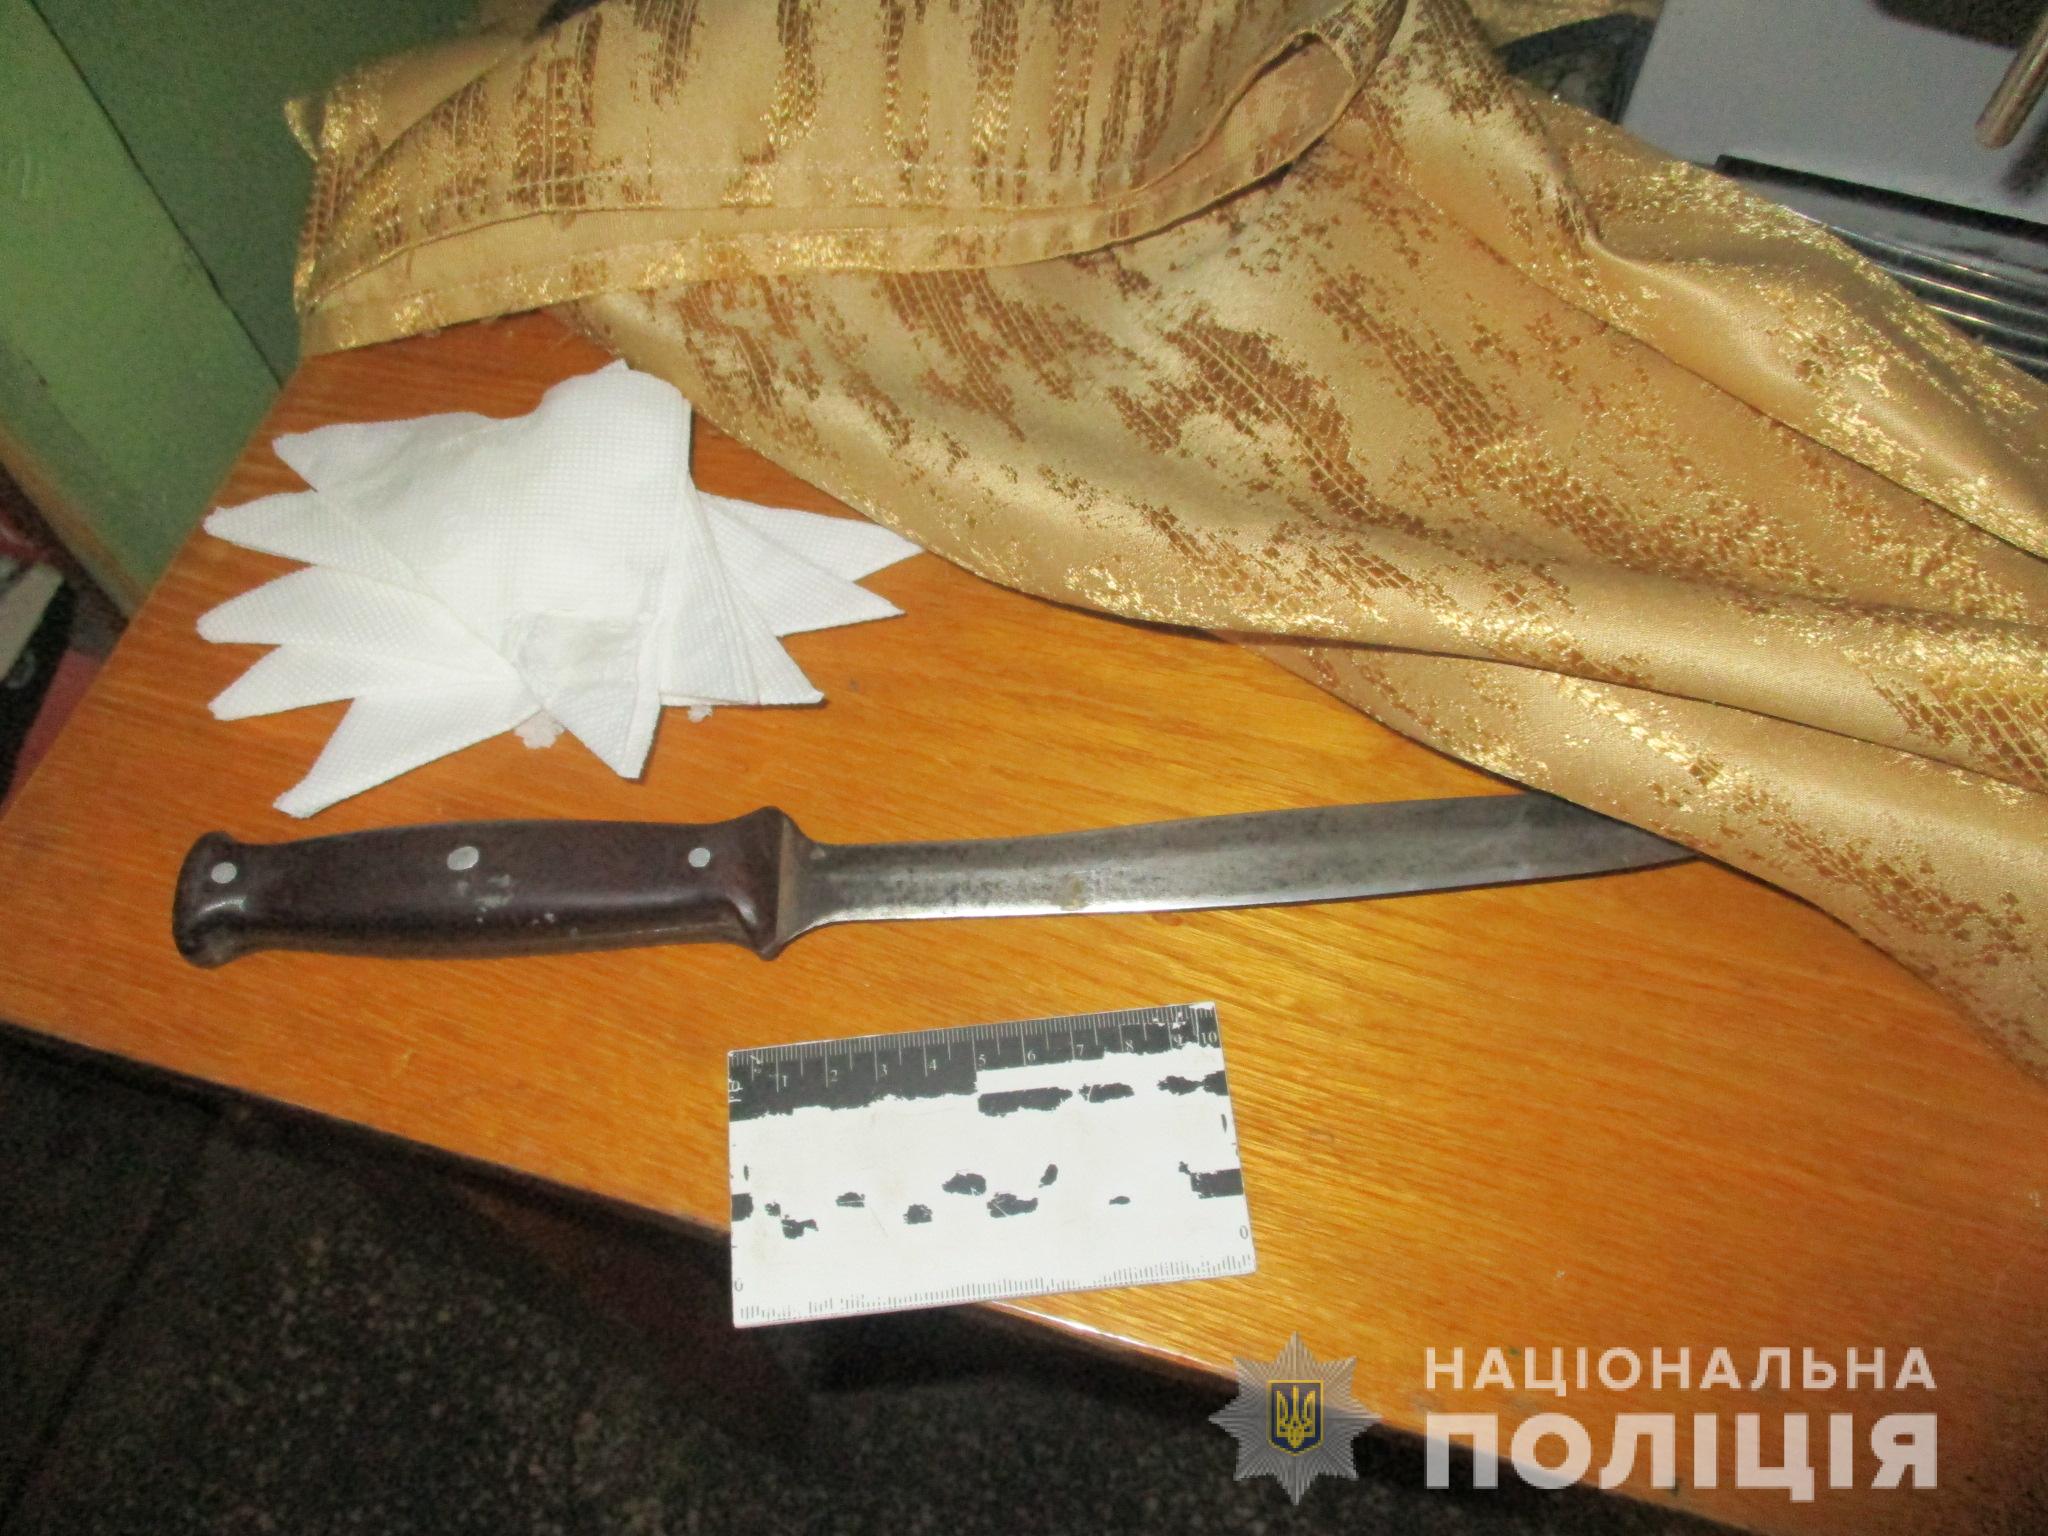 Мужчине, который устроил поножовщину в Орехове, избрали меру пресечения